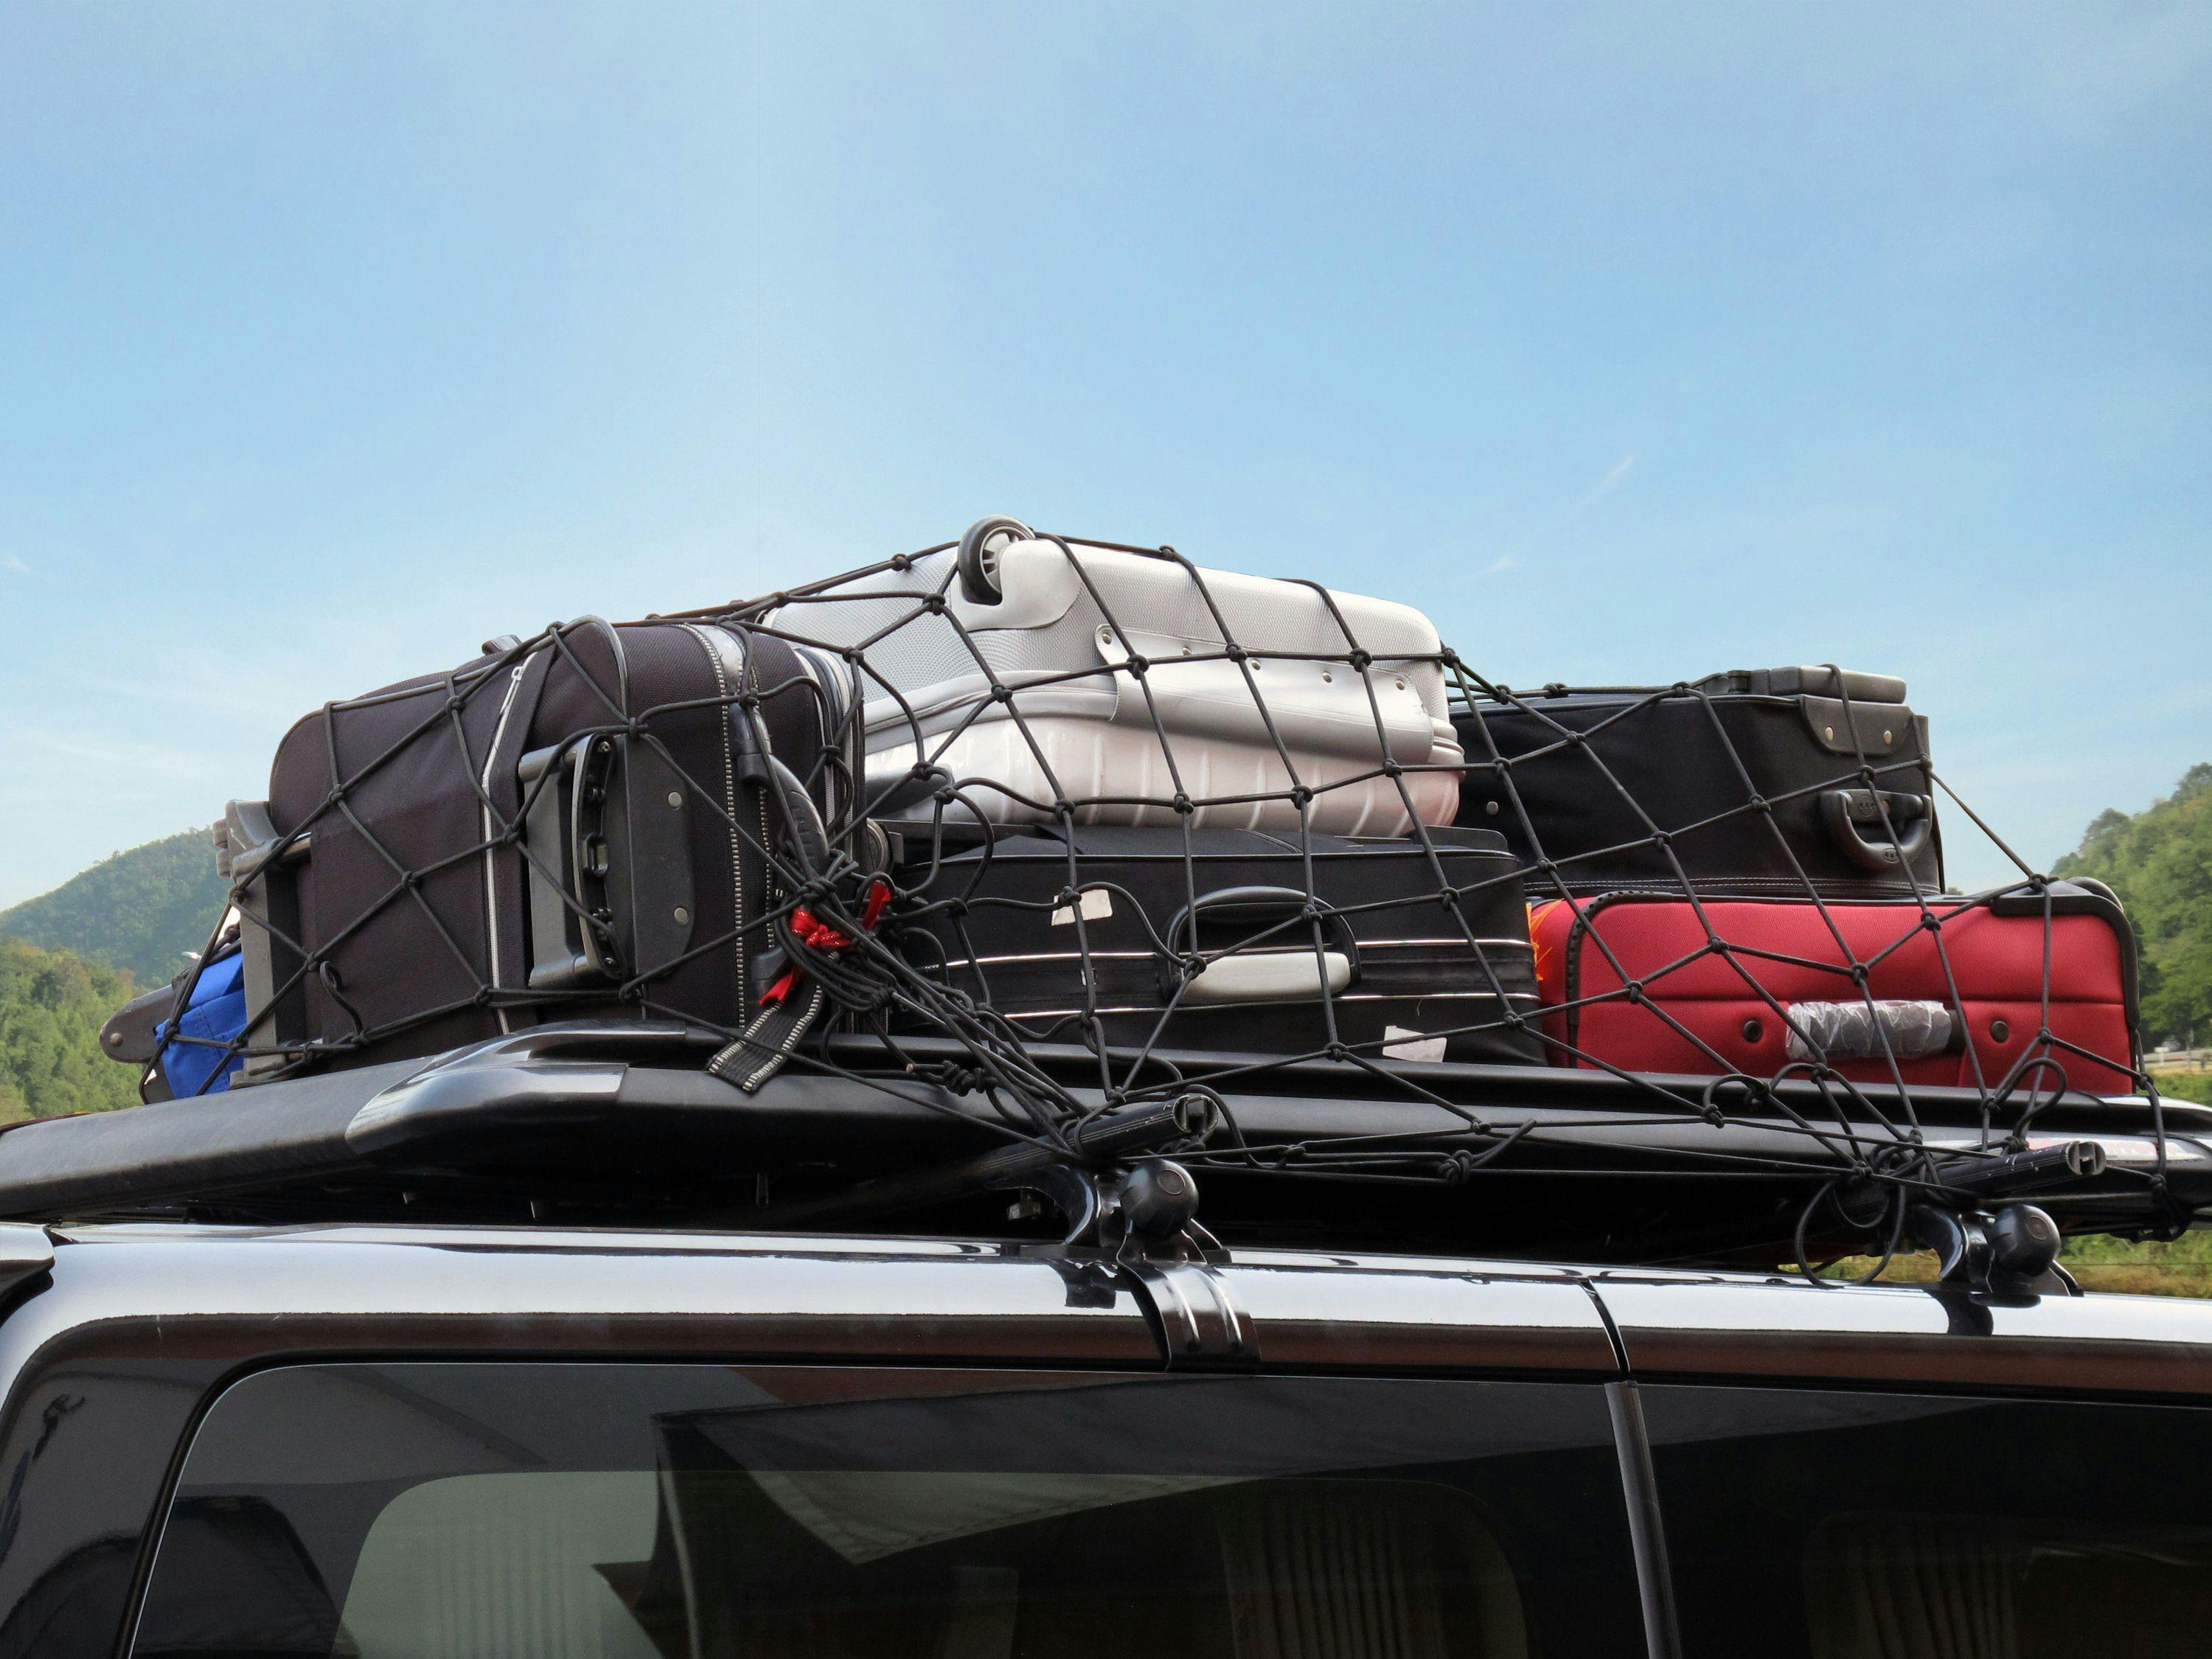 Des bagages sur le toit d'une voiture - iStock